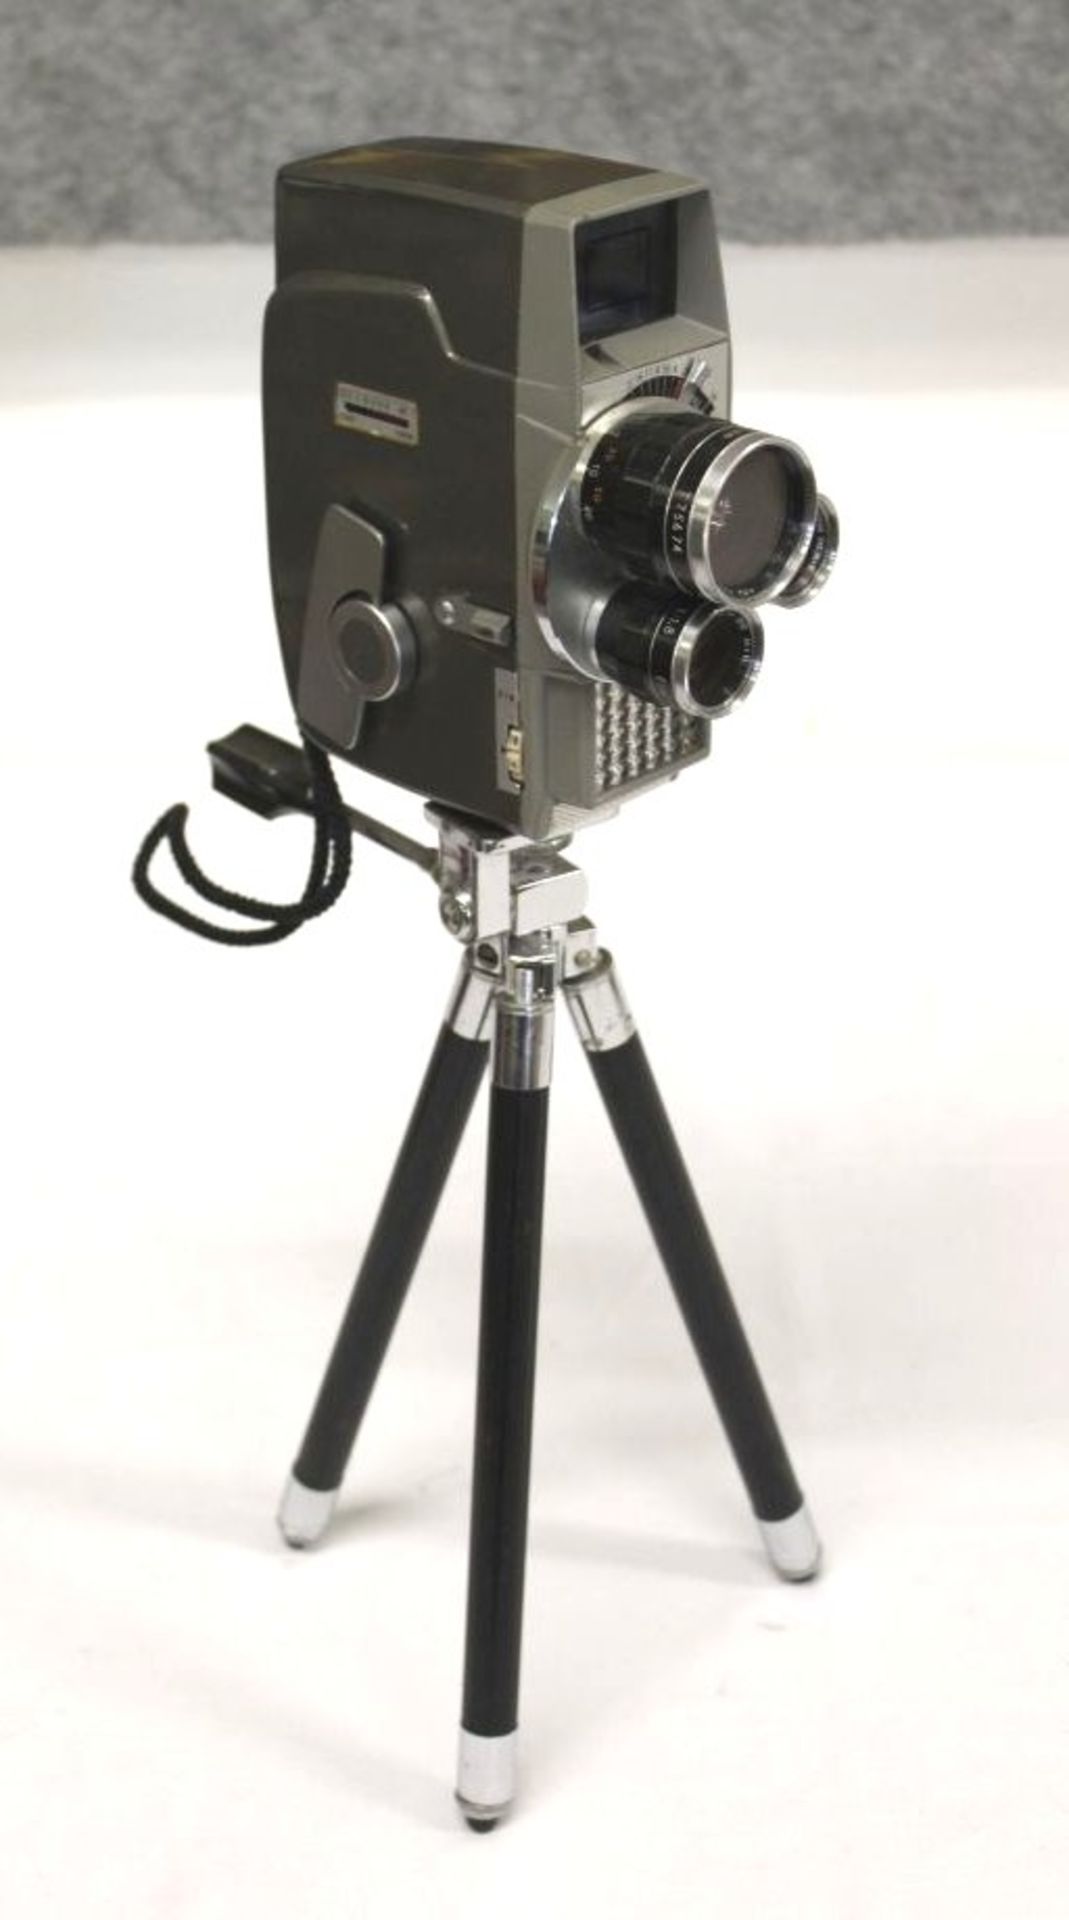 Super Acht-Kamera "Sankyo-Movimat", auf Stativ, Funktion nicht geprüft.